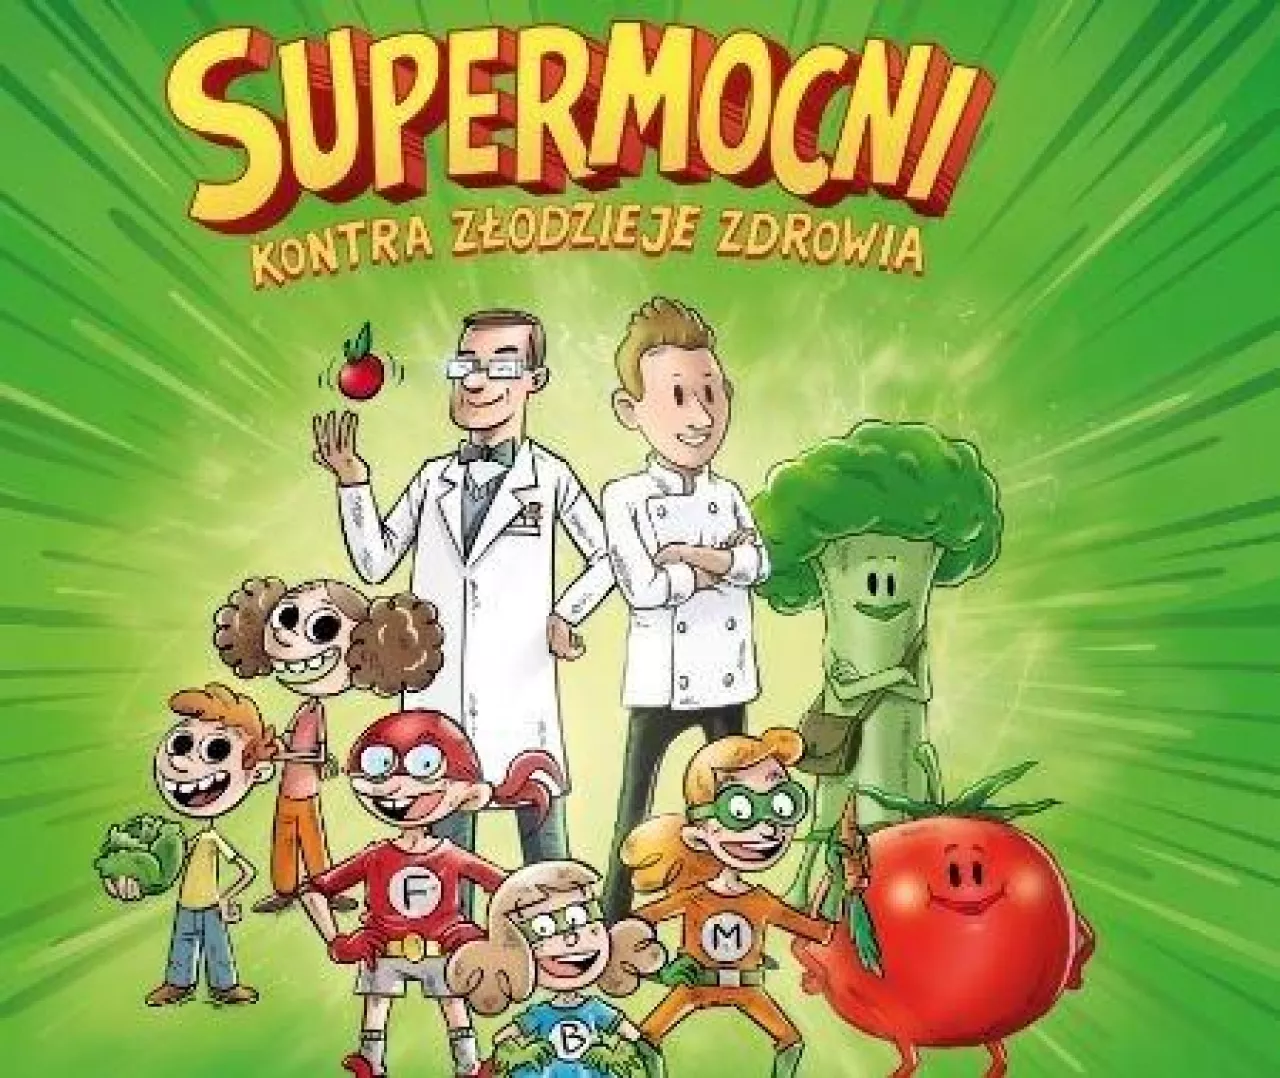 Komiks „Supermocni kontra złodzieje zdrowia” od Lidla (LIdl Polska)